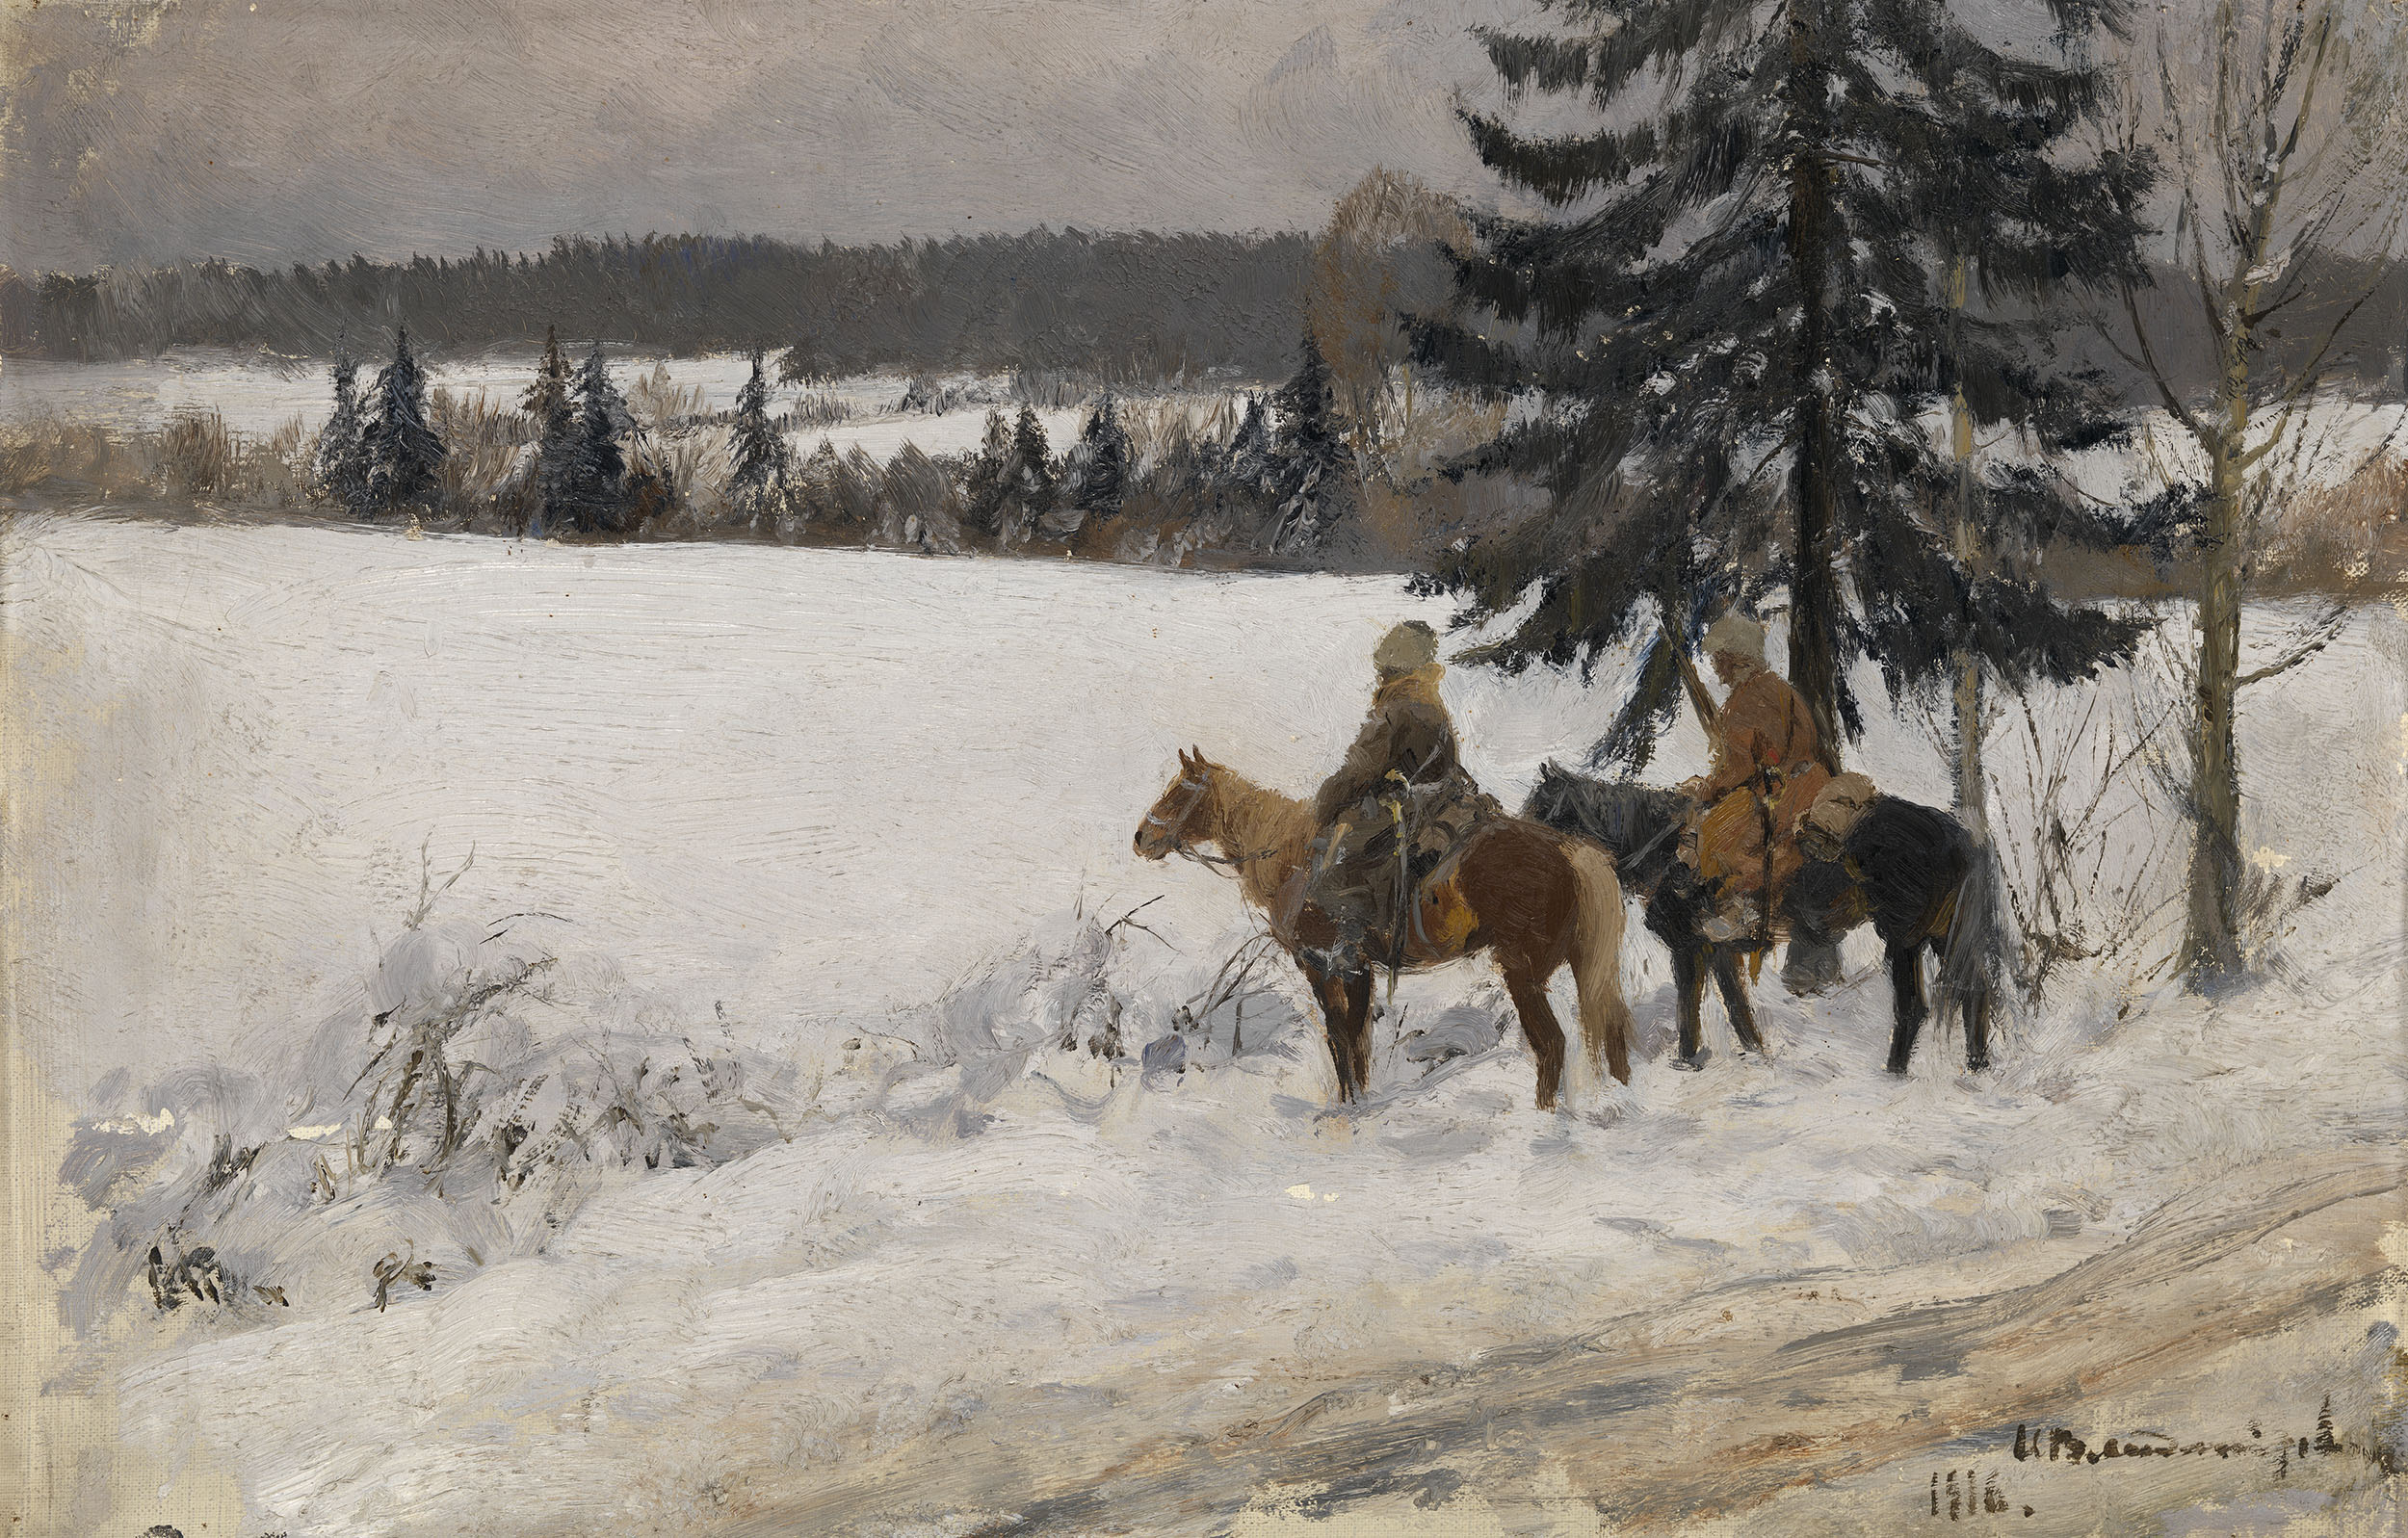 VLADIMIROV, IVAN Winter Scene with Two Cossack Horsemen